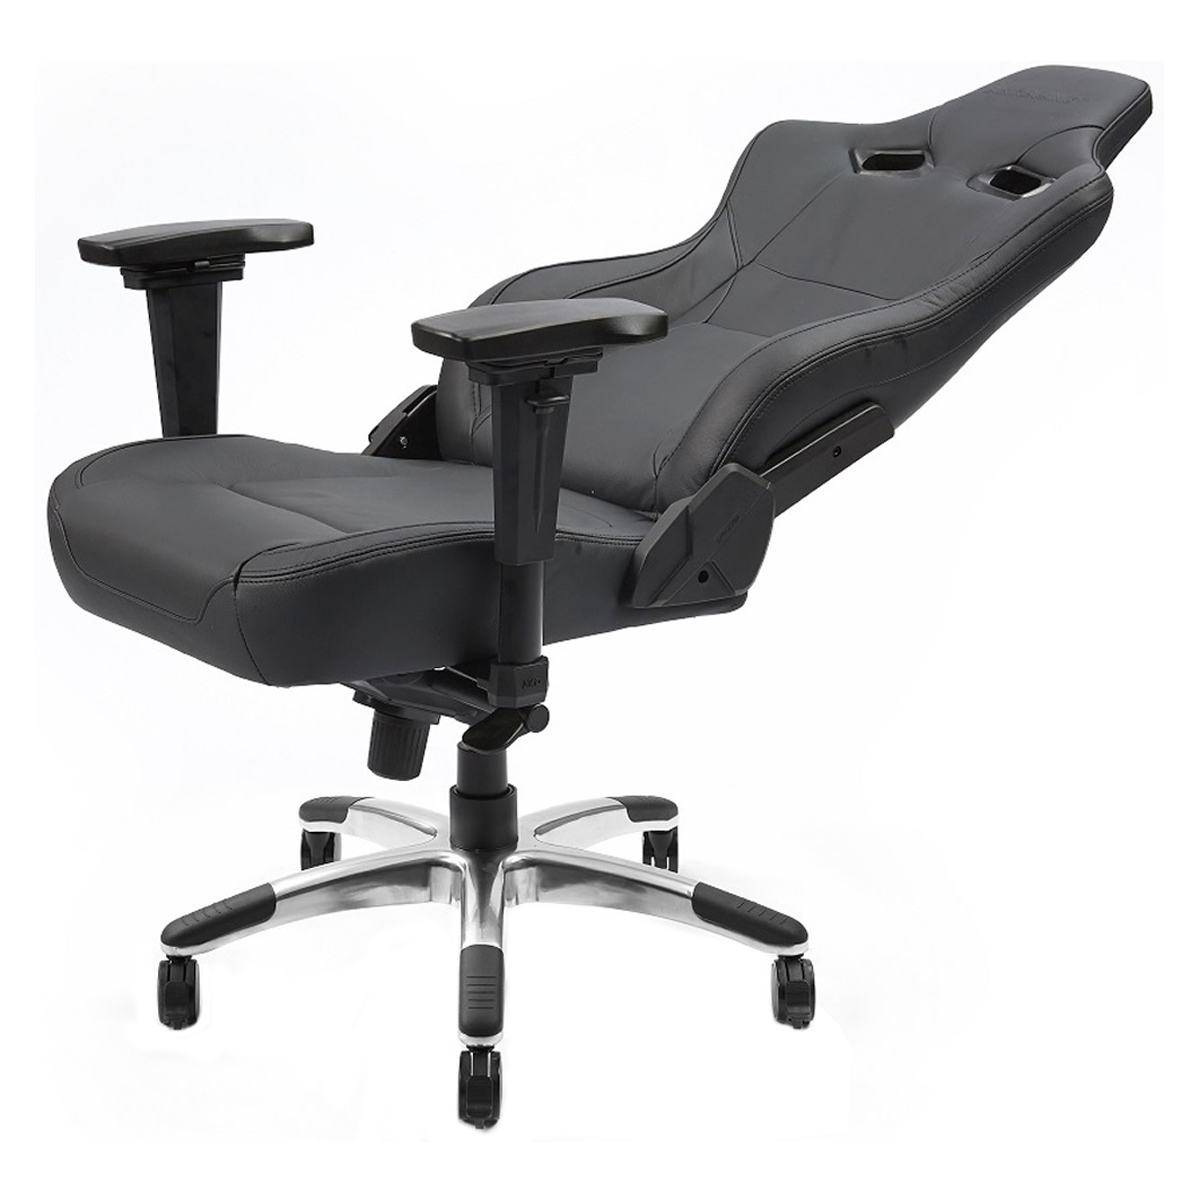 会議椅子 デスクチェア リフレッシュチェア 布張り 肘無 固定脚タイプ NO-1320-1 オフィスチェア